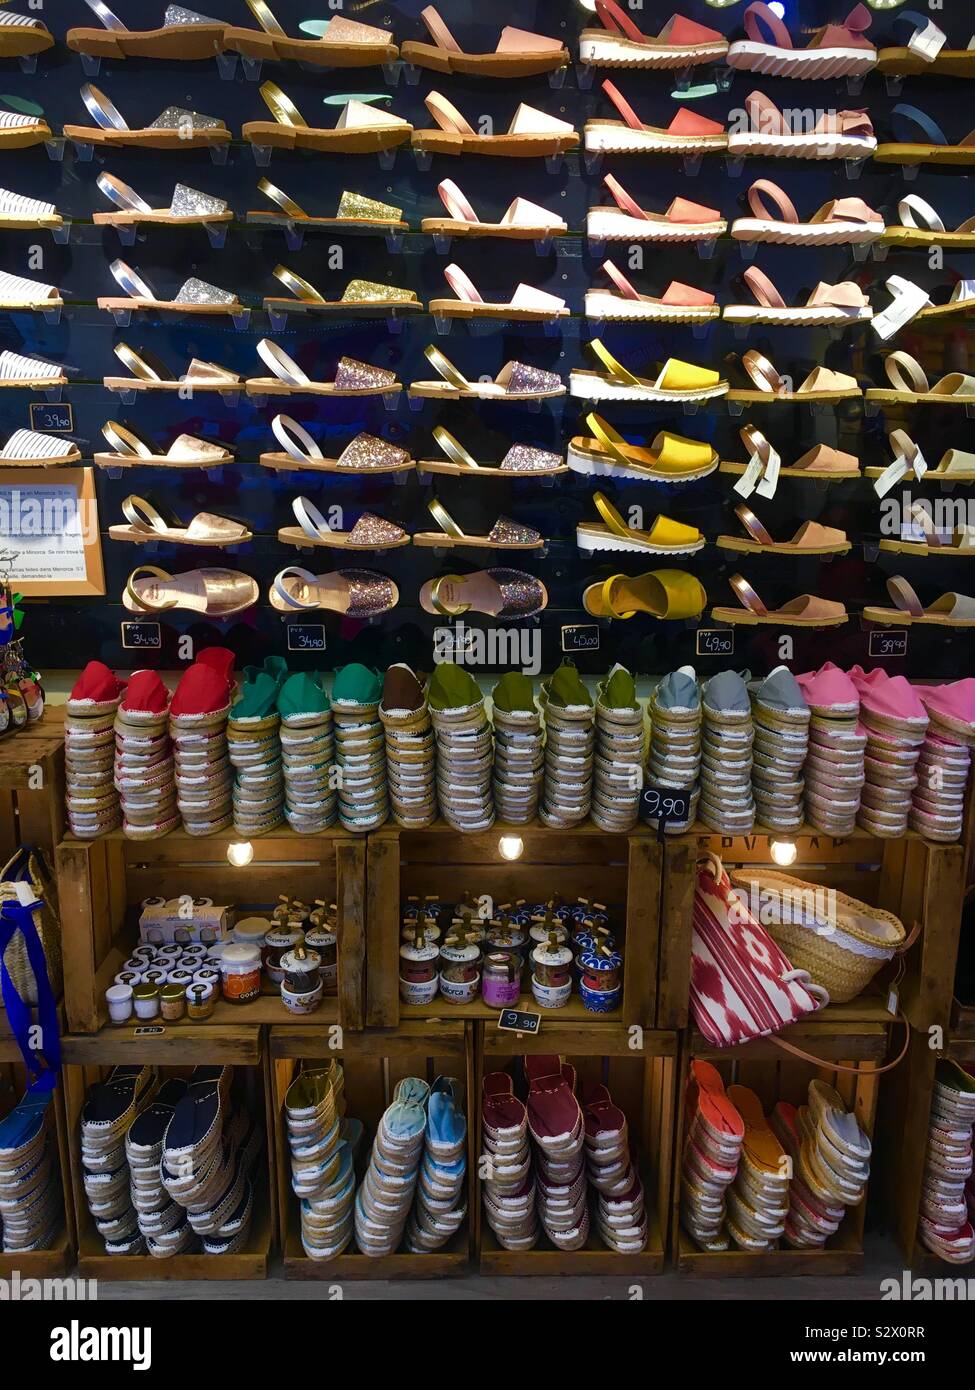 Zapatos Vans Locales Tiendas Discount, 54% OFF | nooralyaghin.com